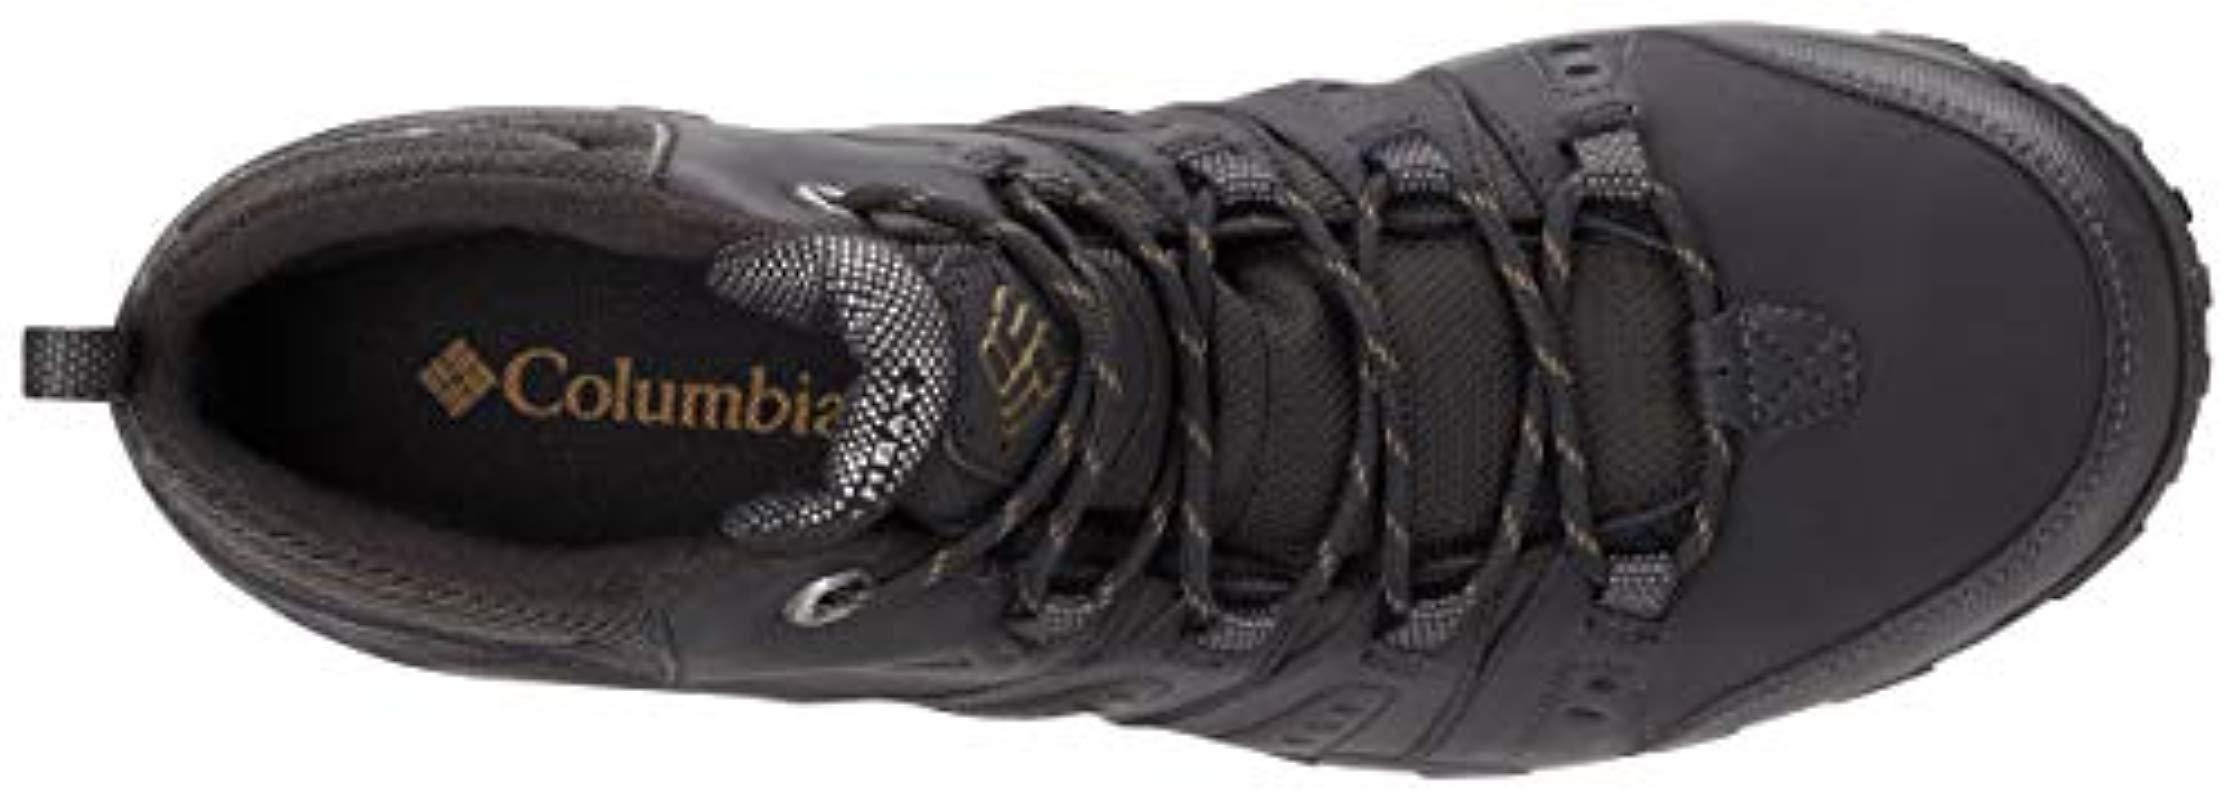 COLUMBIA Woodburn II Chukka 1552991010 Omni-Tech Waterproof Shoes Boots Mens New 